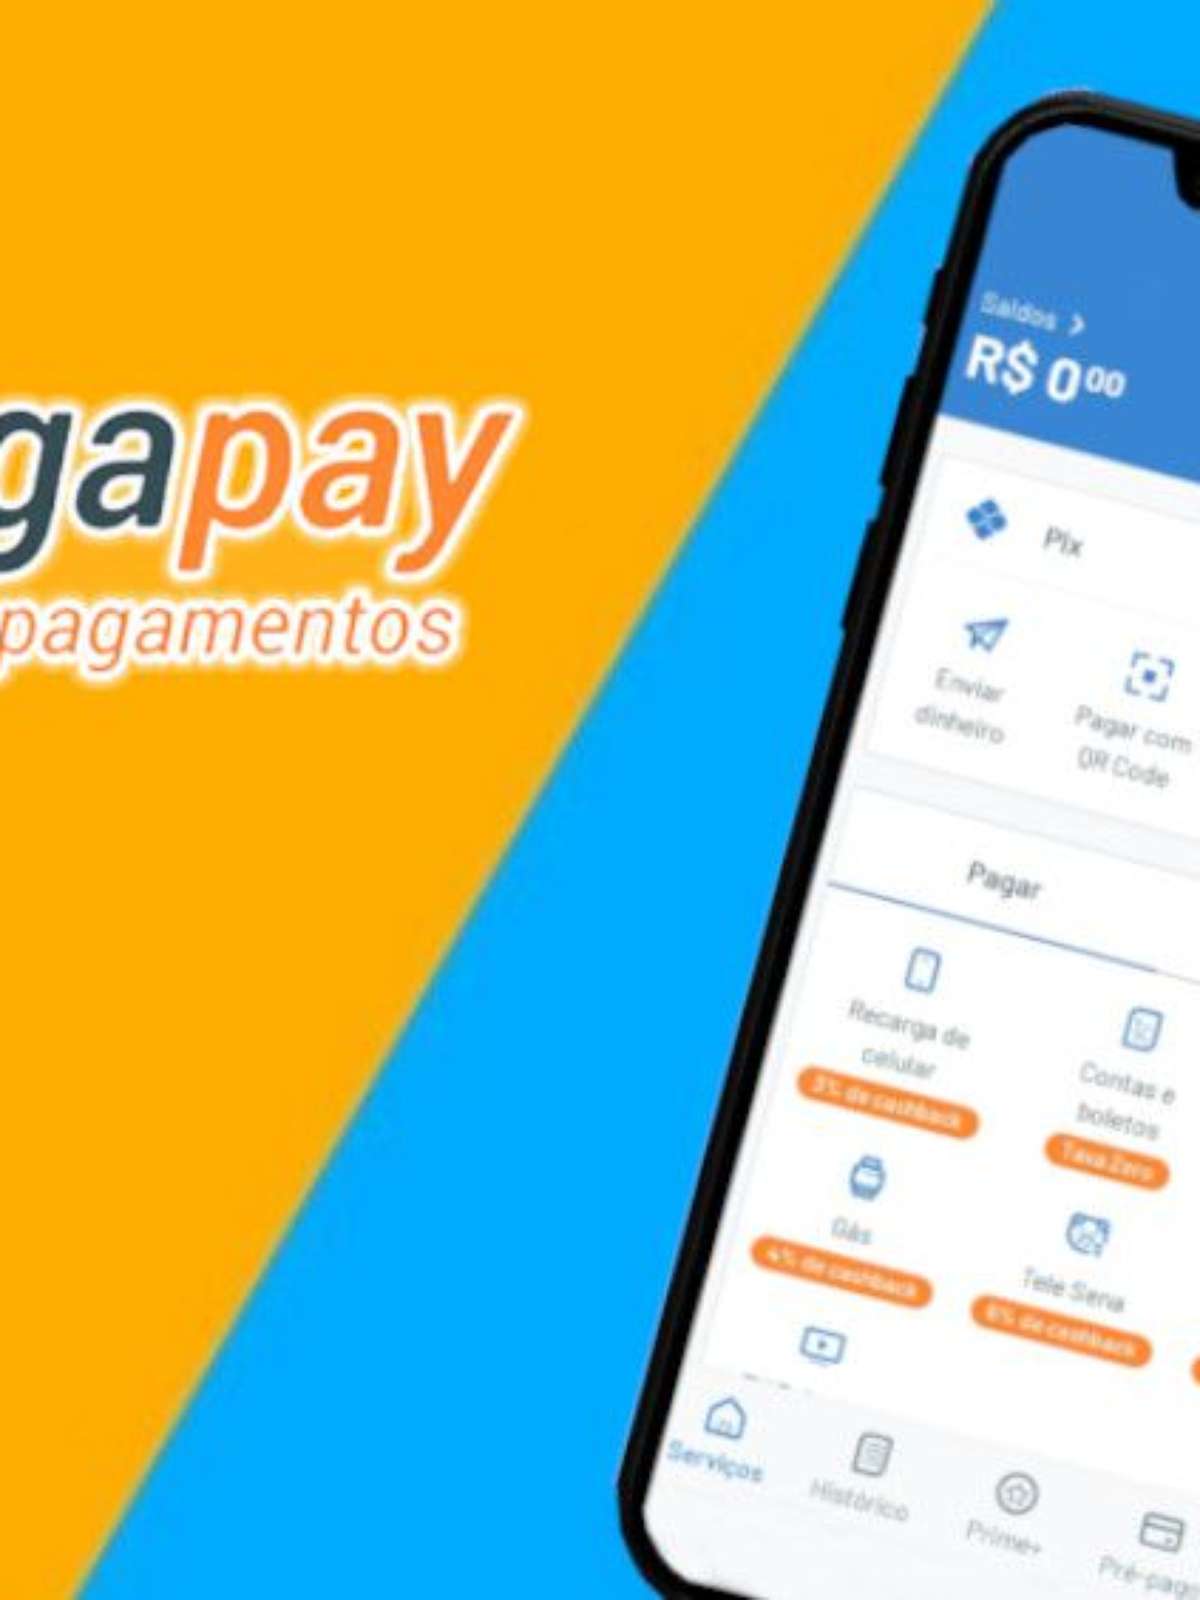 RecargaPay: Pix com Cartão Crédito Parcelado, Pagar Contas e